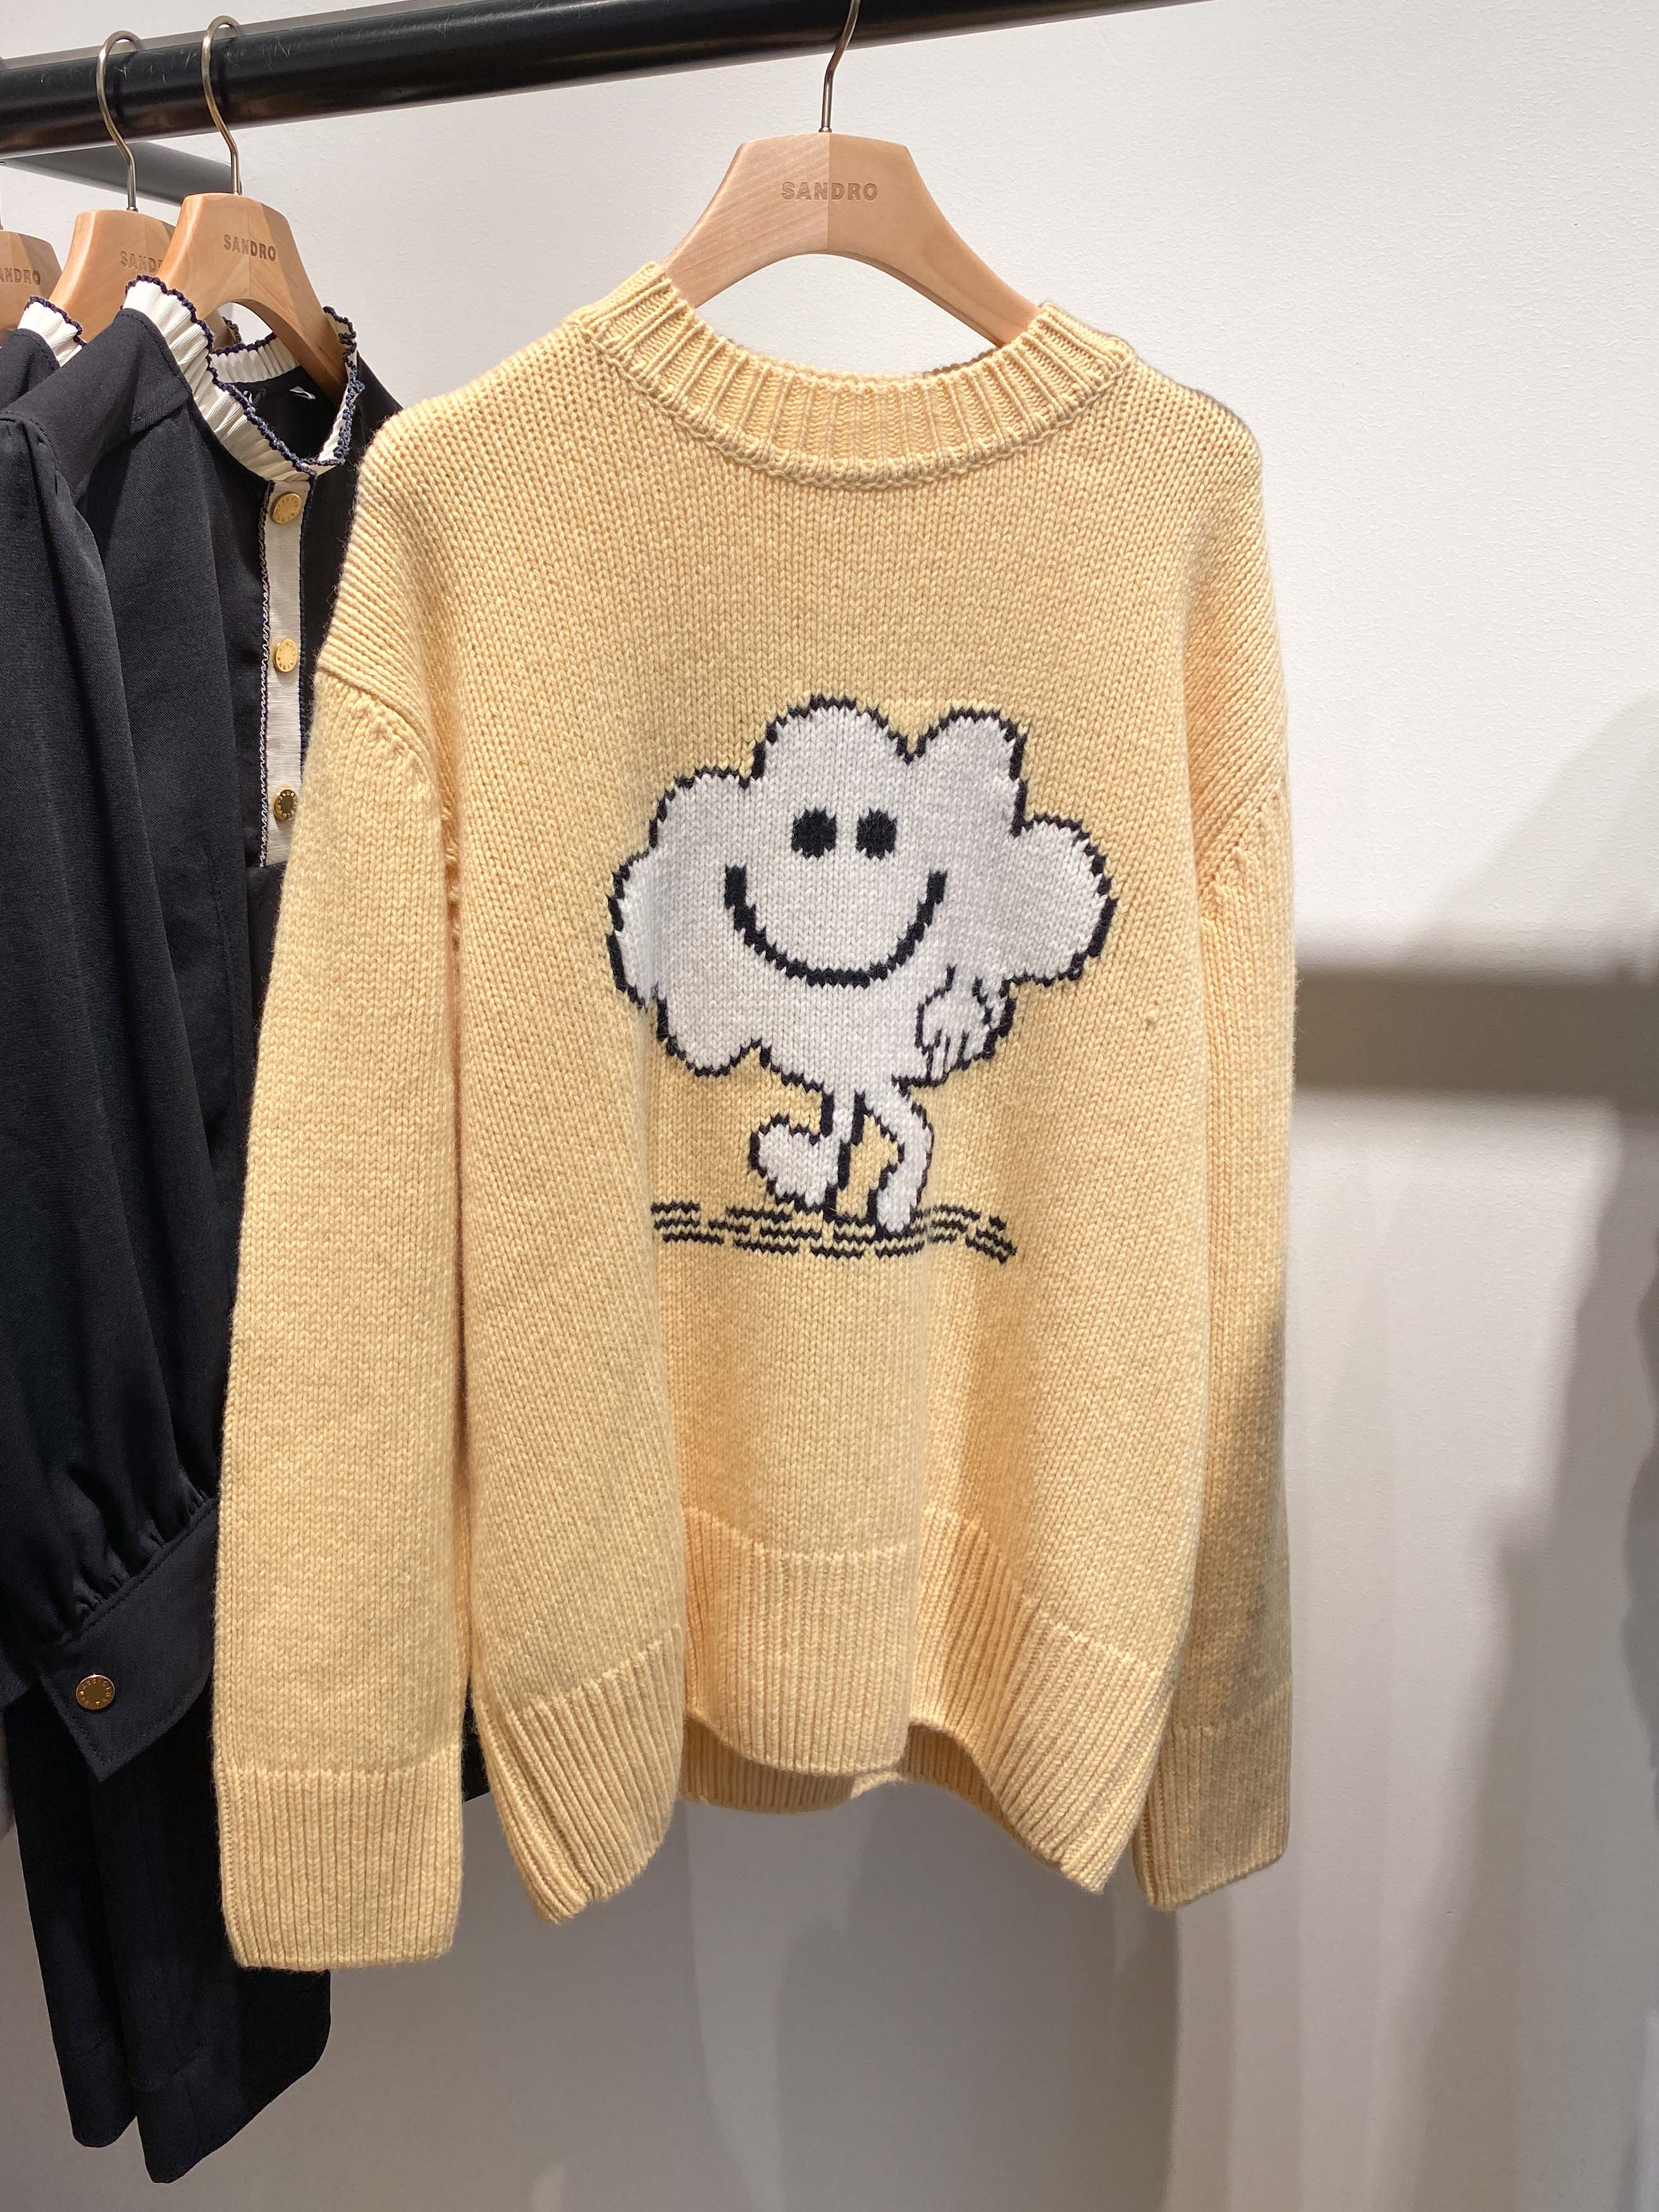 산드로 여성 드림 구름 캐시미어 울 스웨터 (SFPPU01359-520)